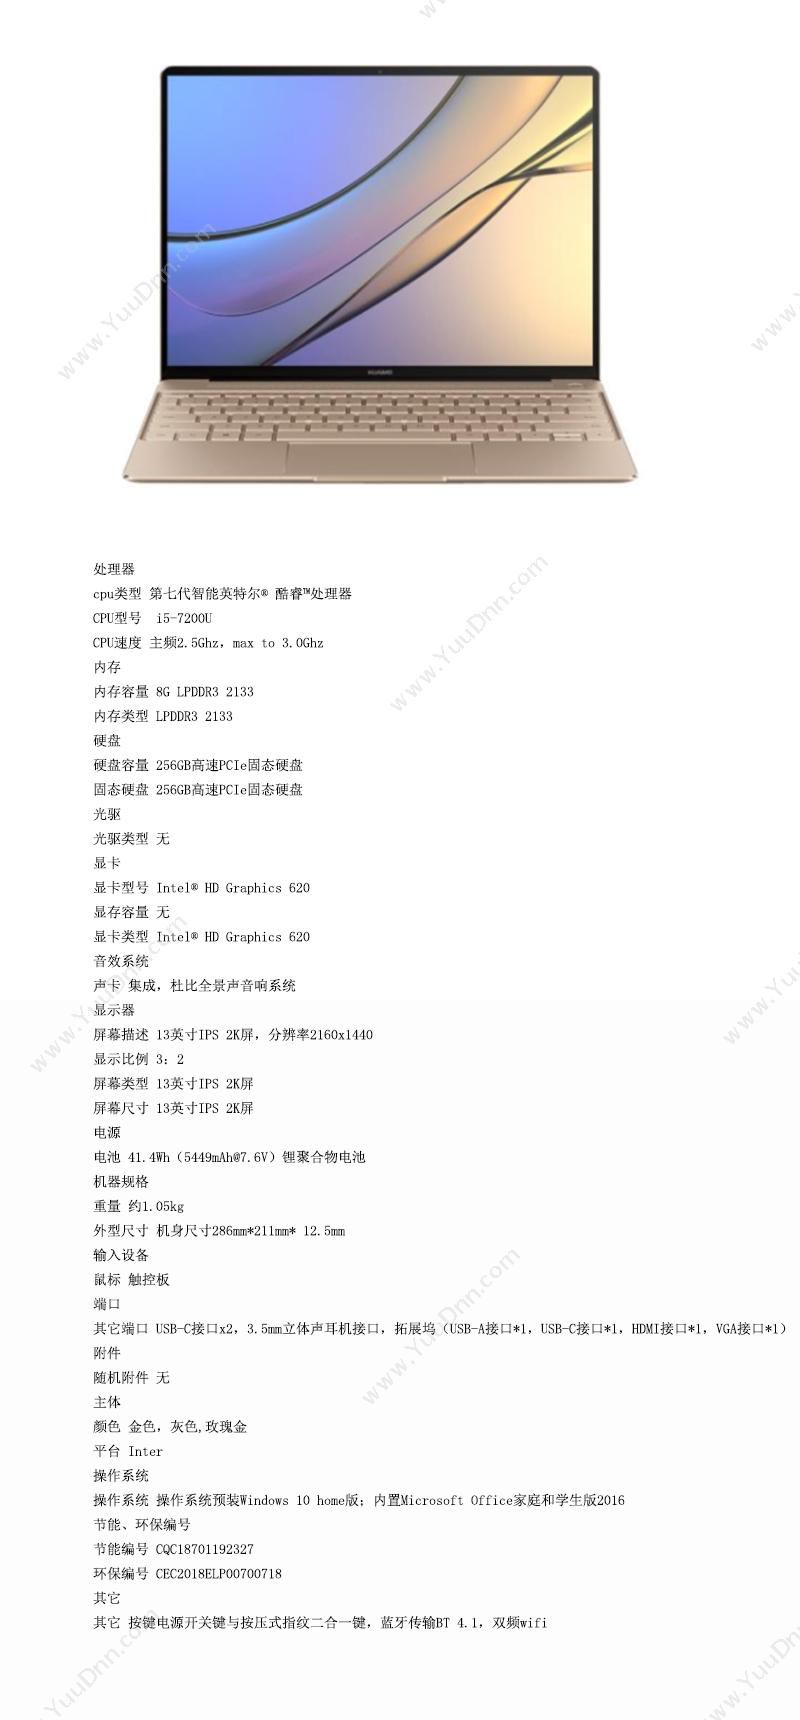 华为 Huawei WT-W09/8G 笔记本